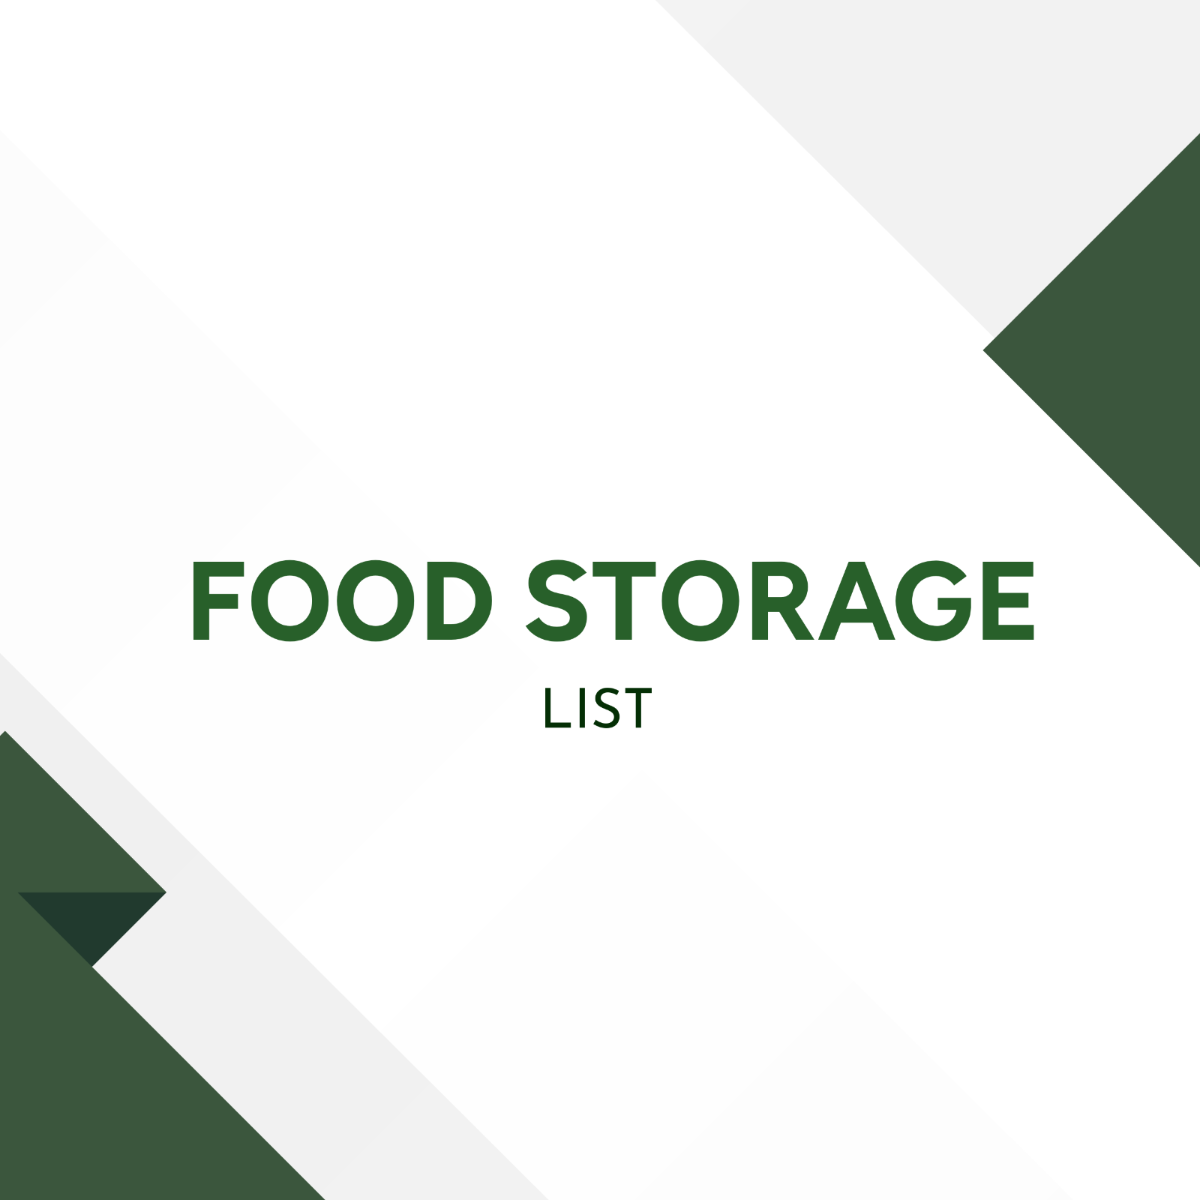 Food Storage List Template